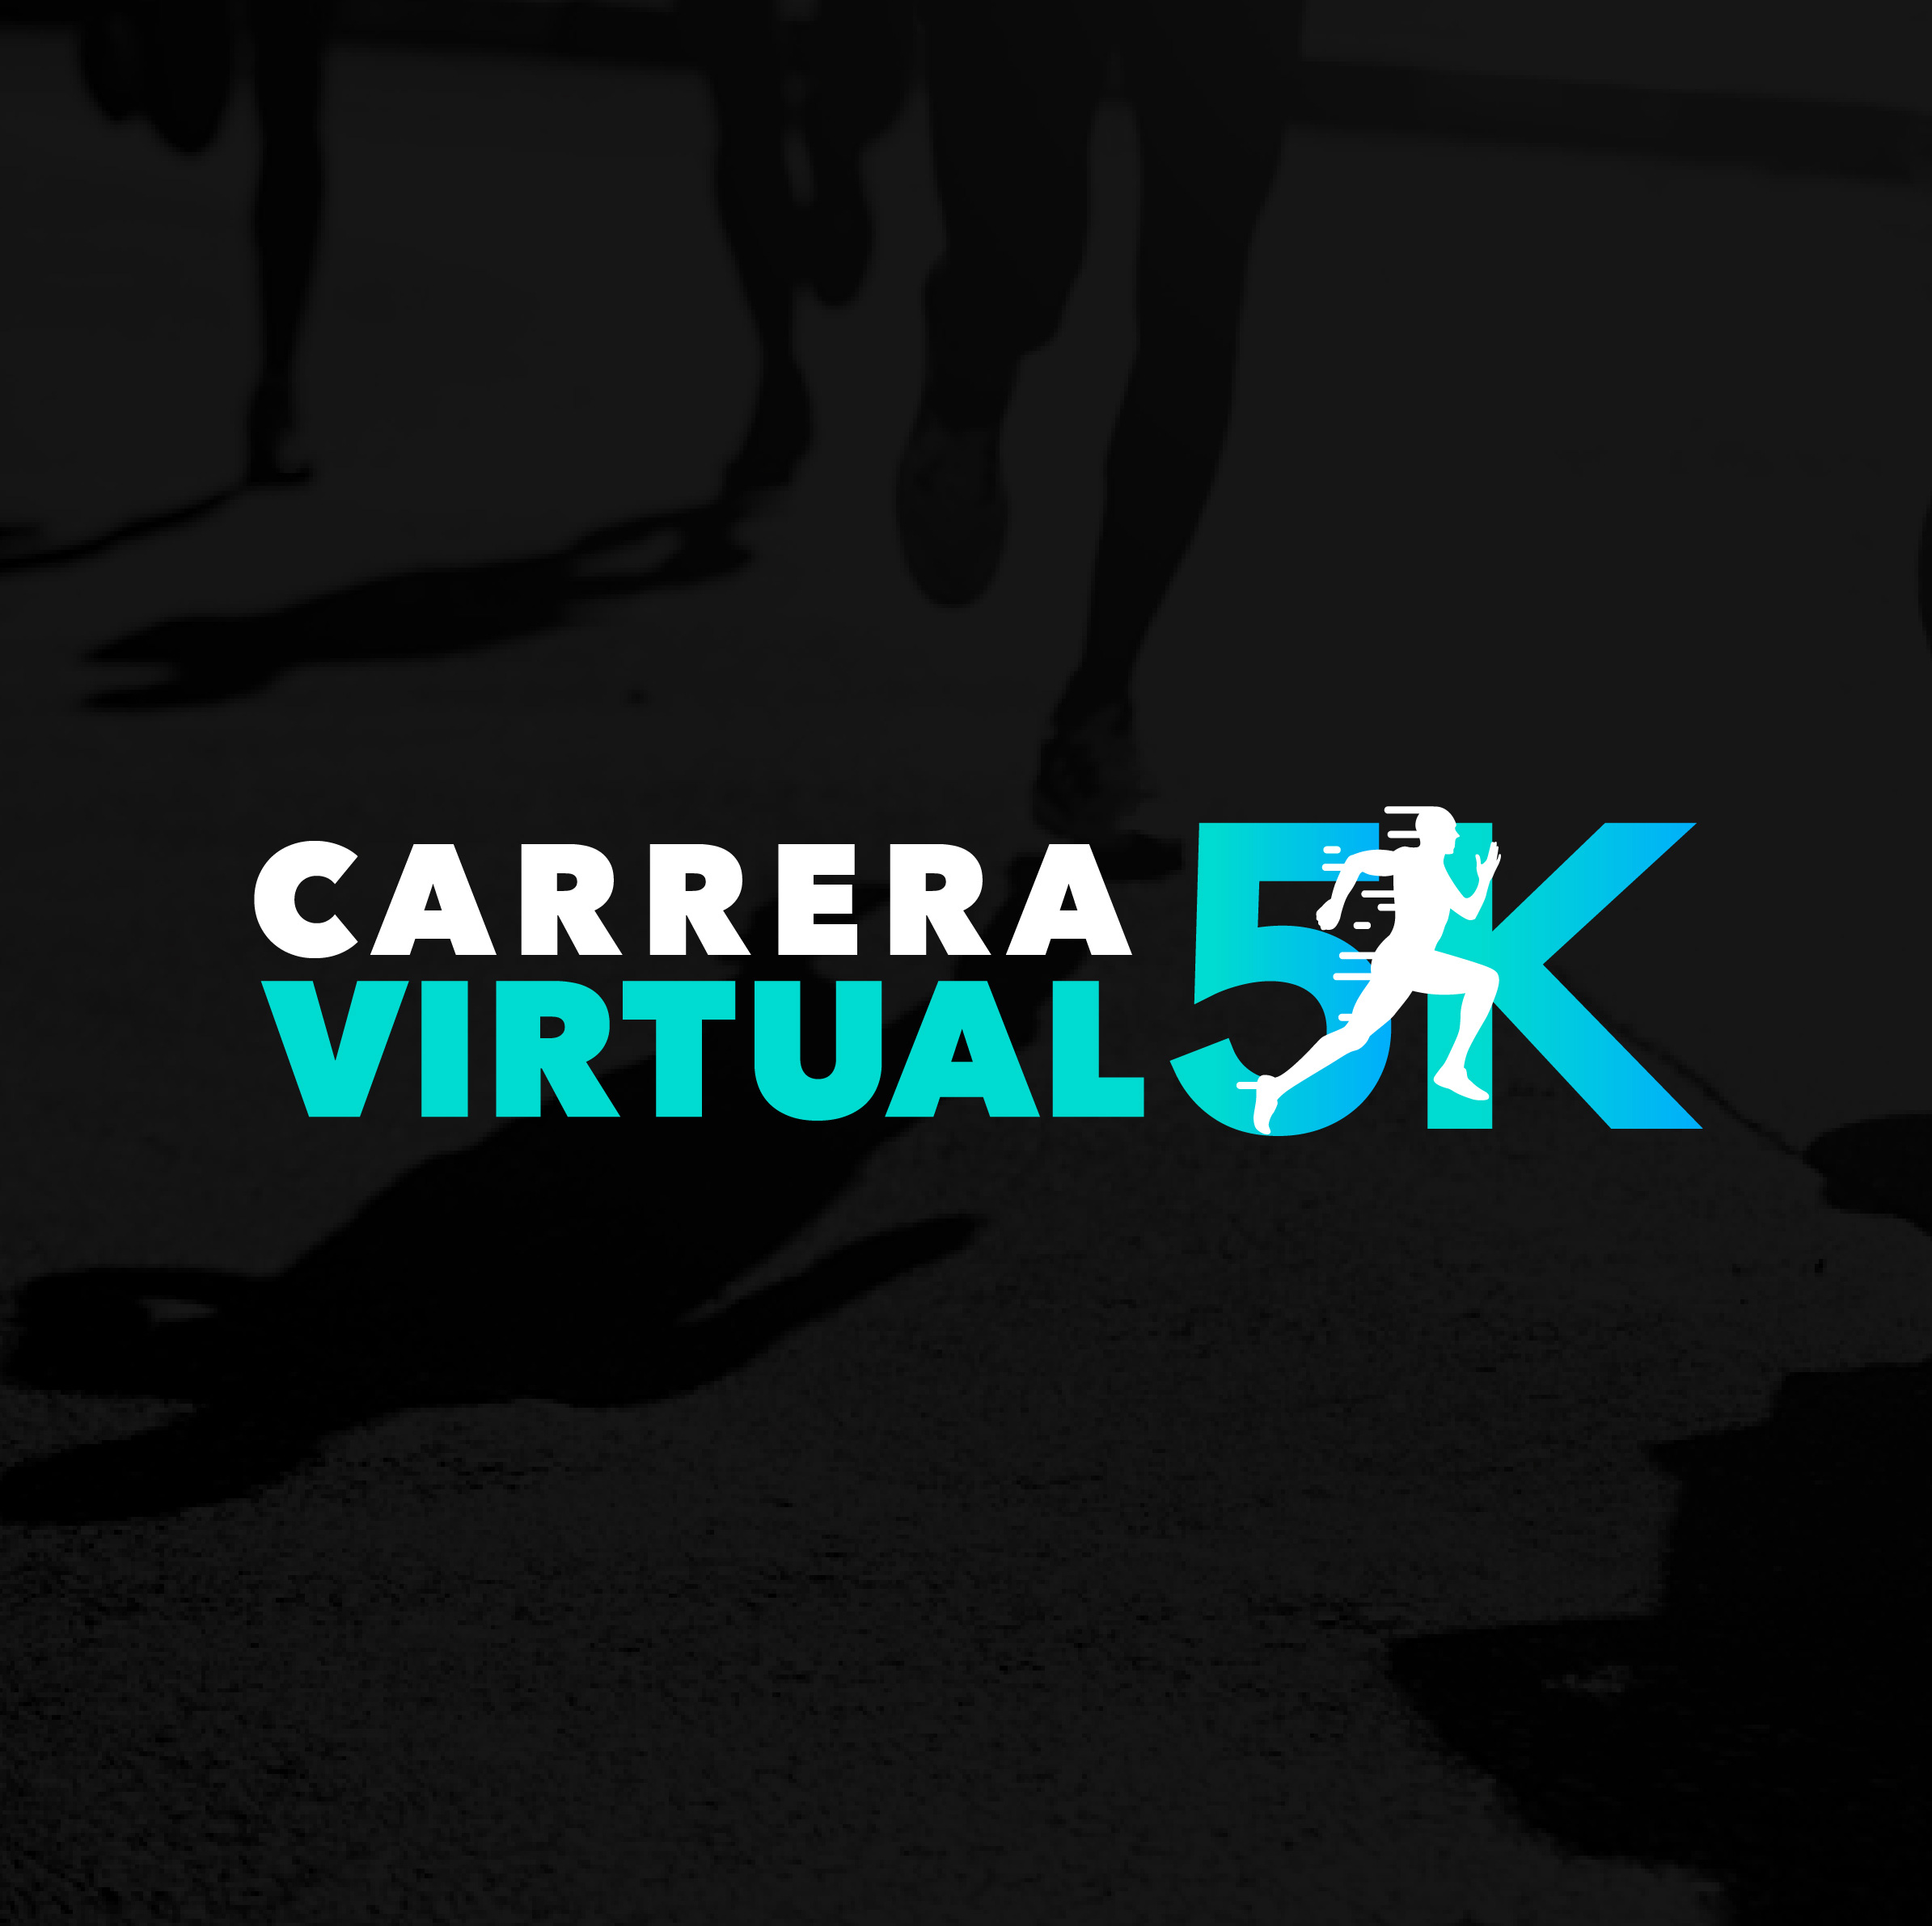 Carrera virtual México